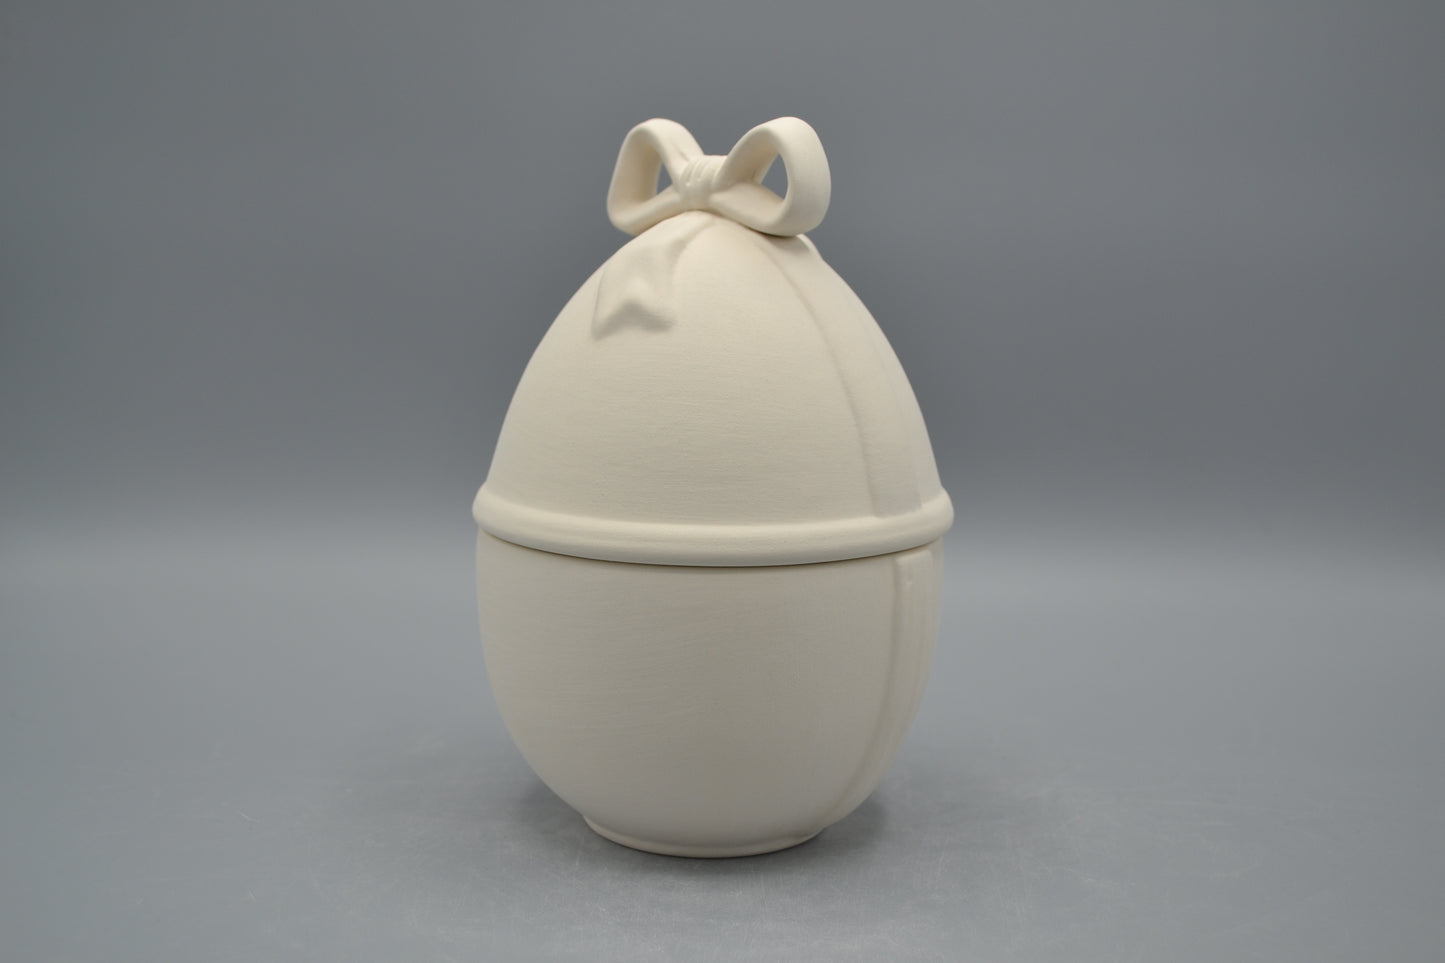 Uovo con fiocco in ceramica semilavorata GREZZA da dipingere